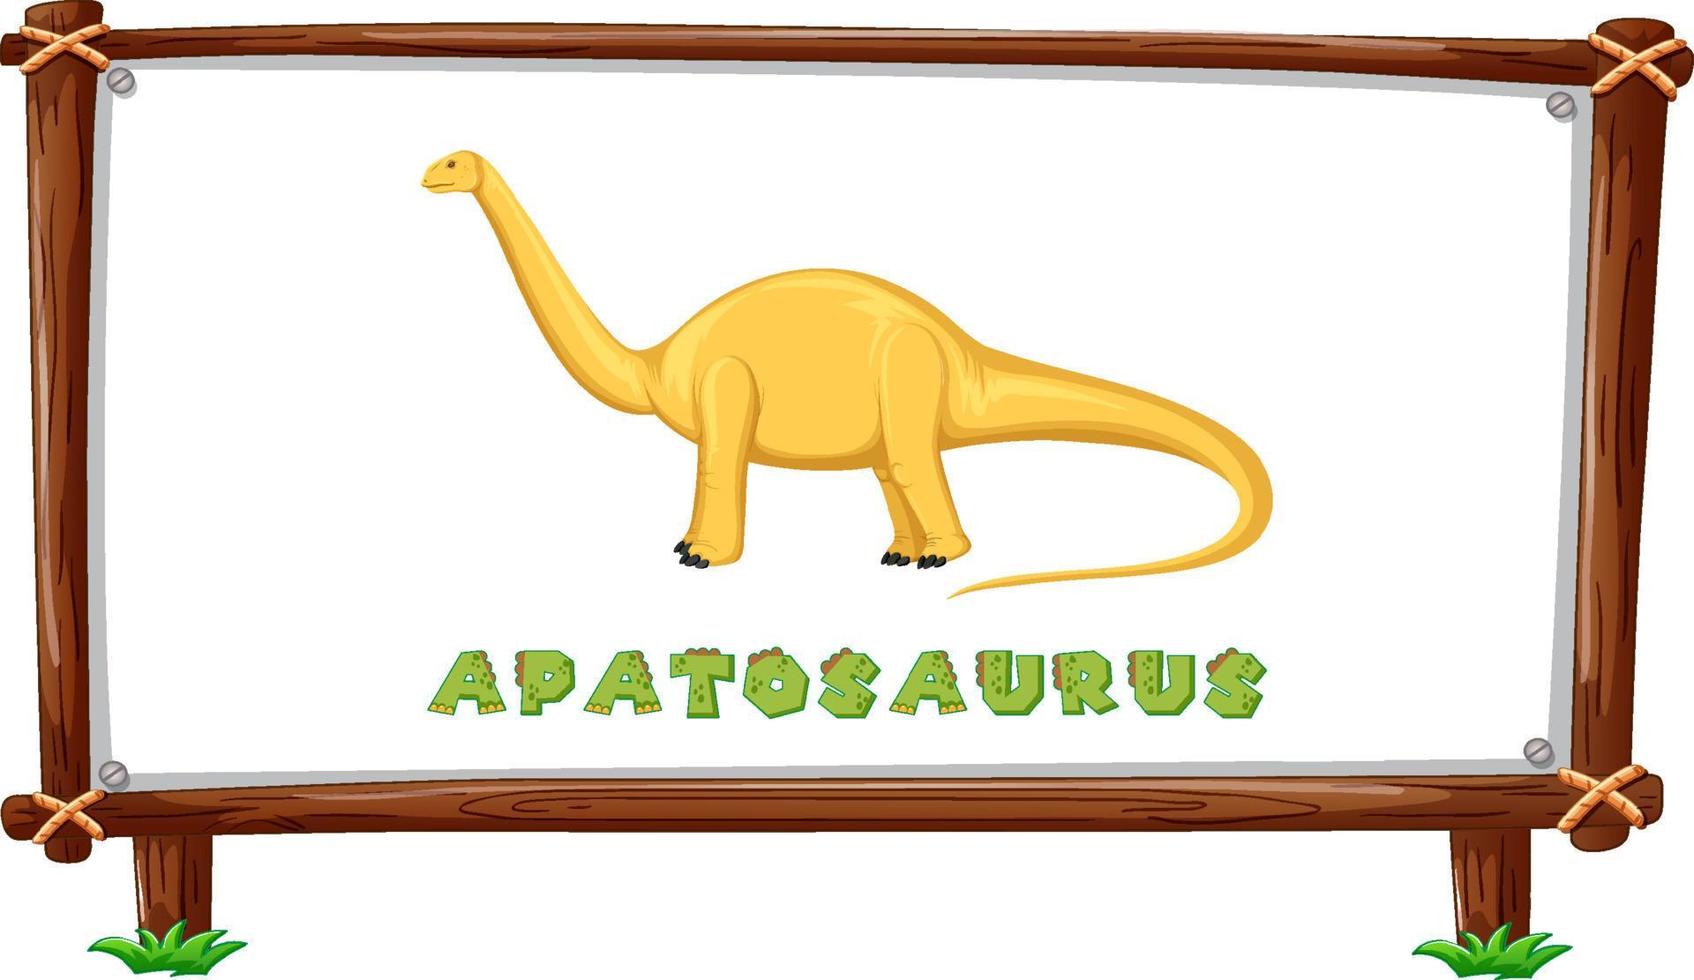 framesjabloon met dinosaurussen en tekst apatosaurus-ontwerp erin vector